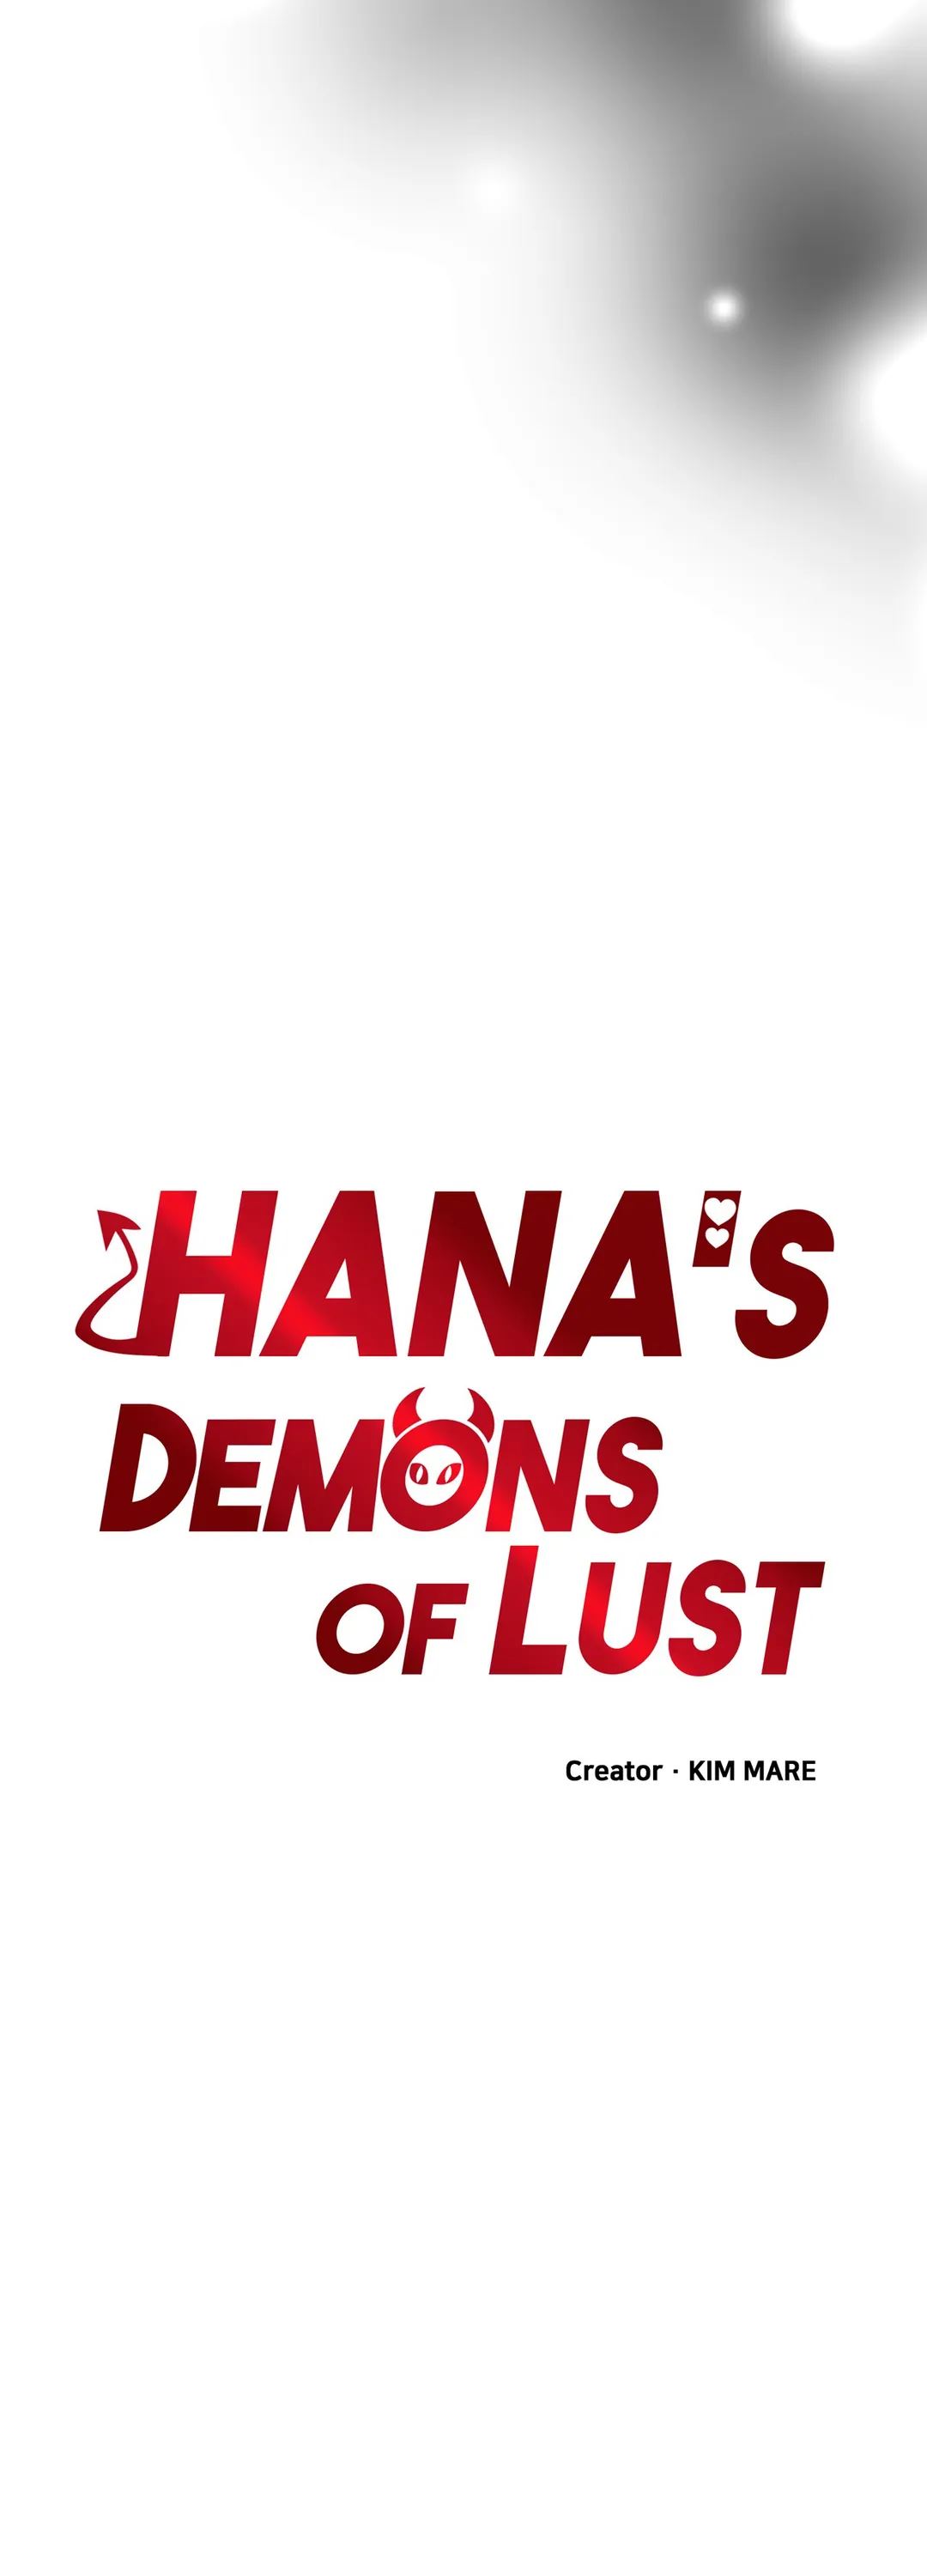 Hana’s Demons of Lust NEW image